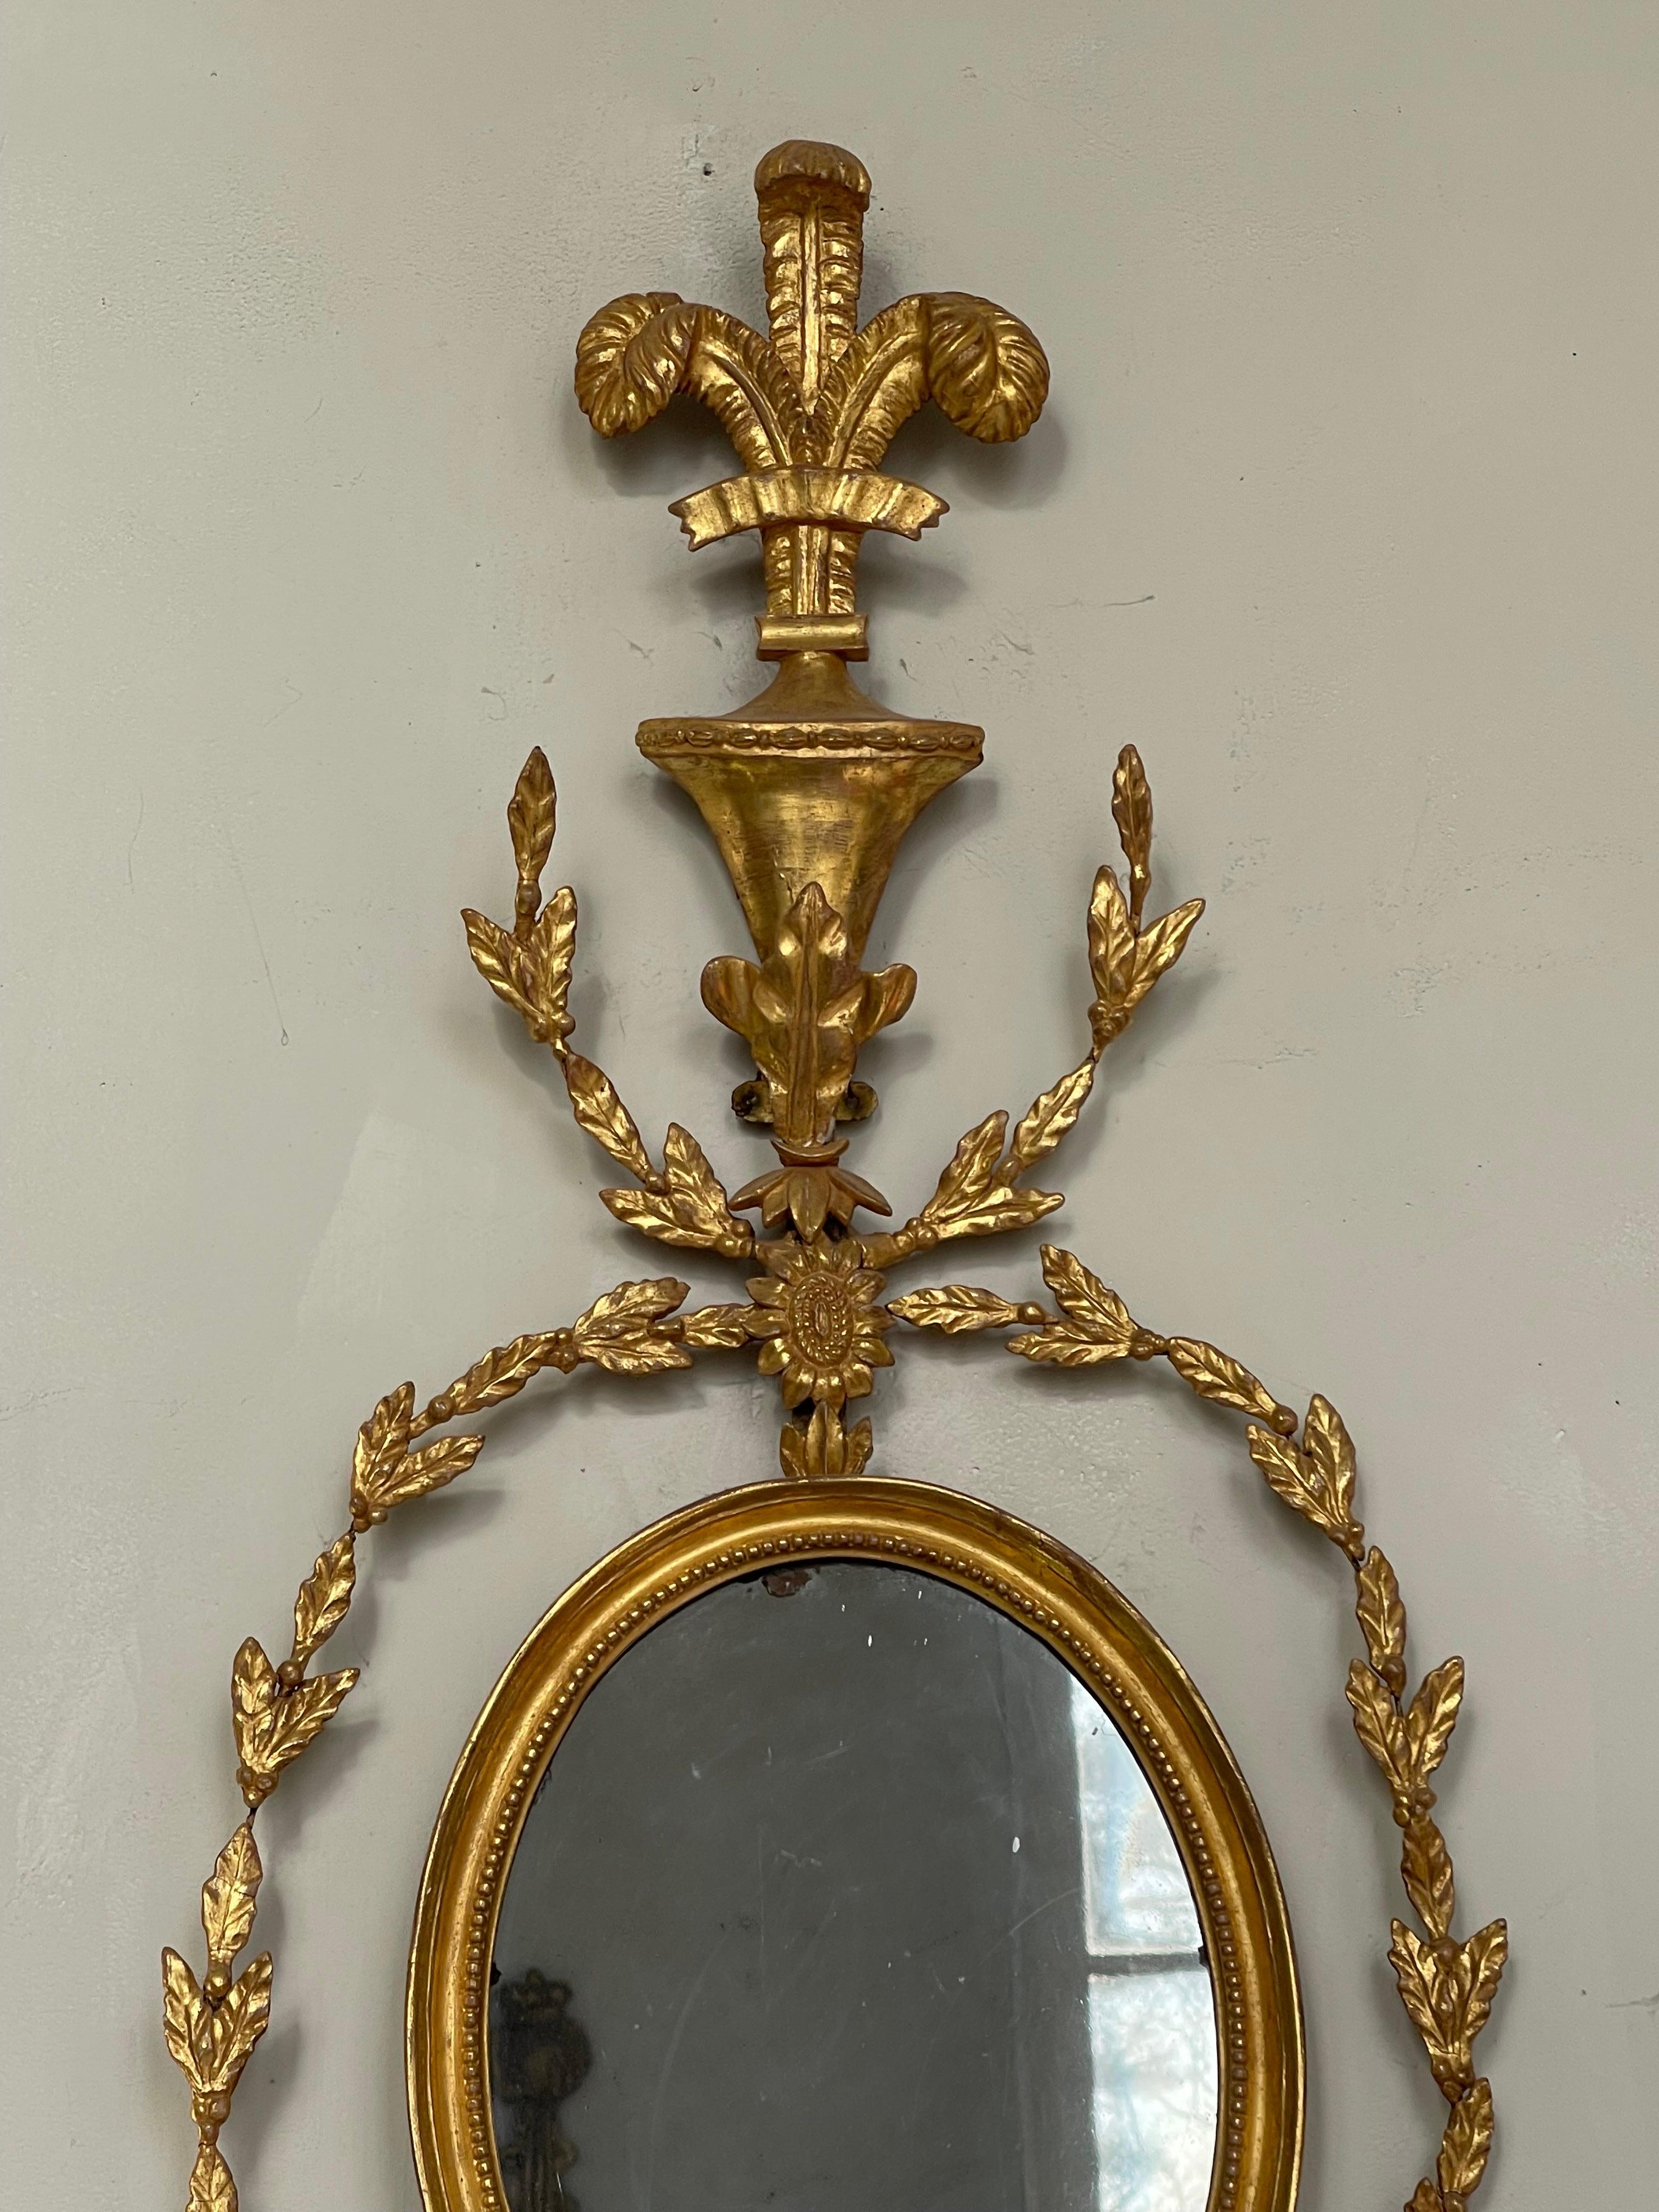 Cette paire extrêmement rare d'appliques murales à miroir girandole en bois doré est anglaise et a été produite au début du XIXe siècle dans le style Adams.
Un support soutient un miroir ovale de 30 cm de haut, entouré de guirlandes de laurier